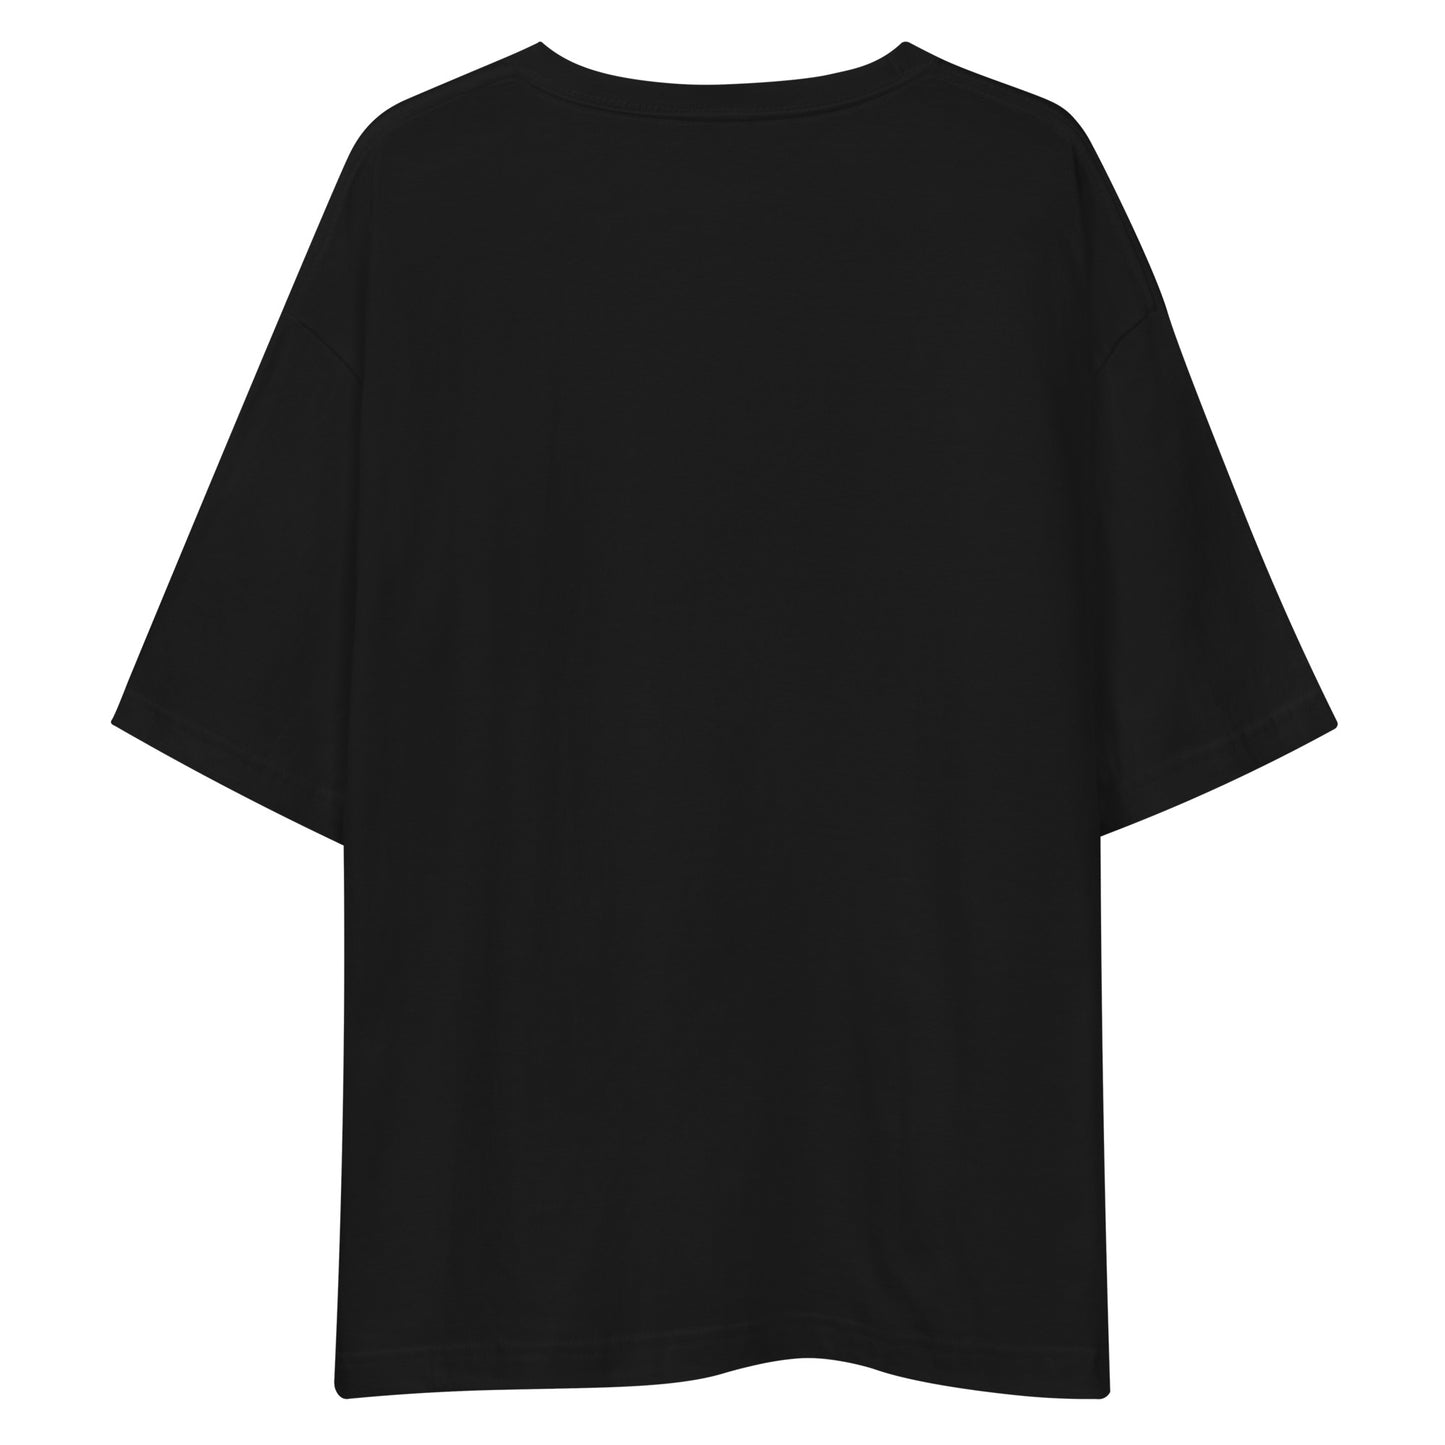 G200 - Tシャツ/ビッグシルエット(チアリーダー : ブラック)